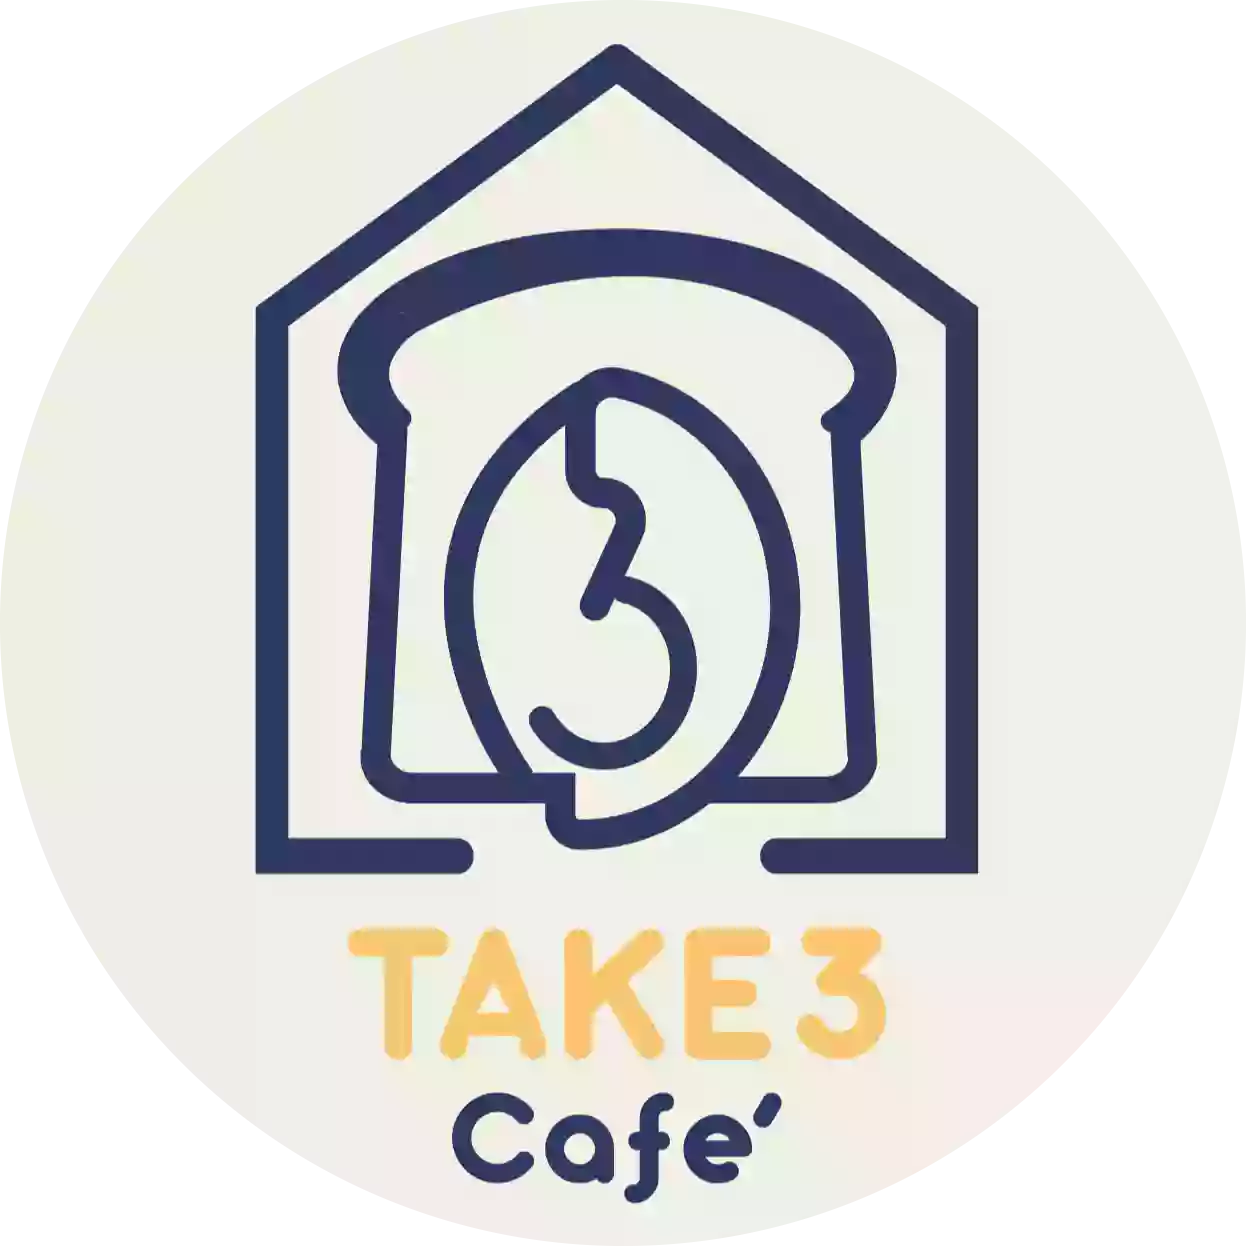 Take 3 Cafe